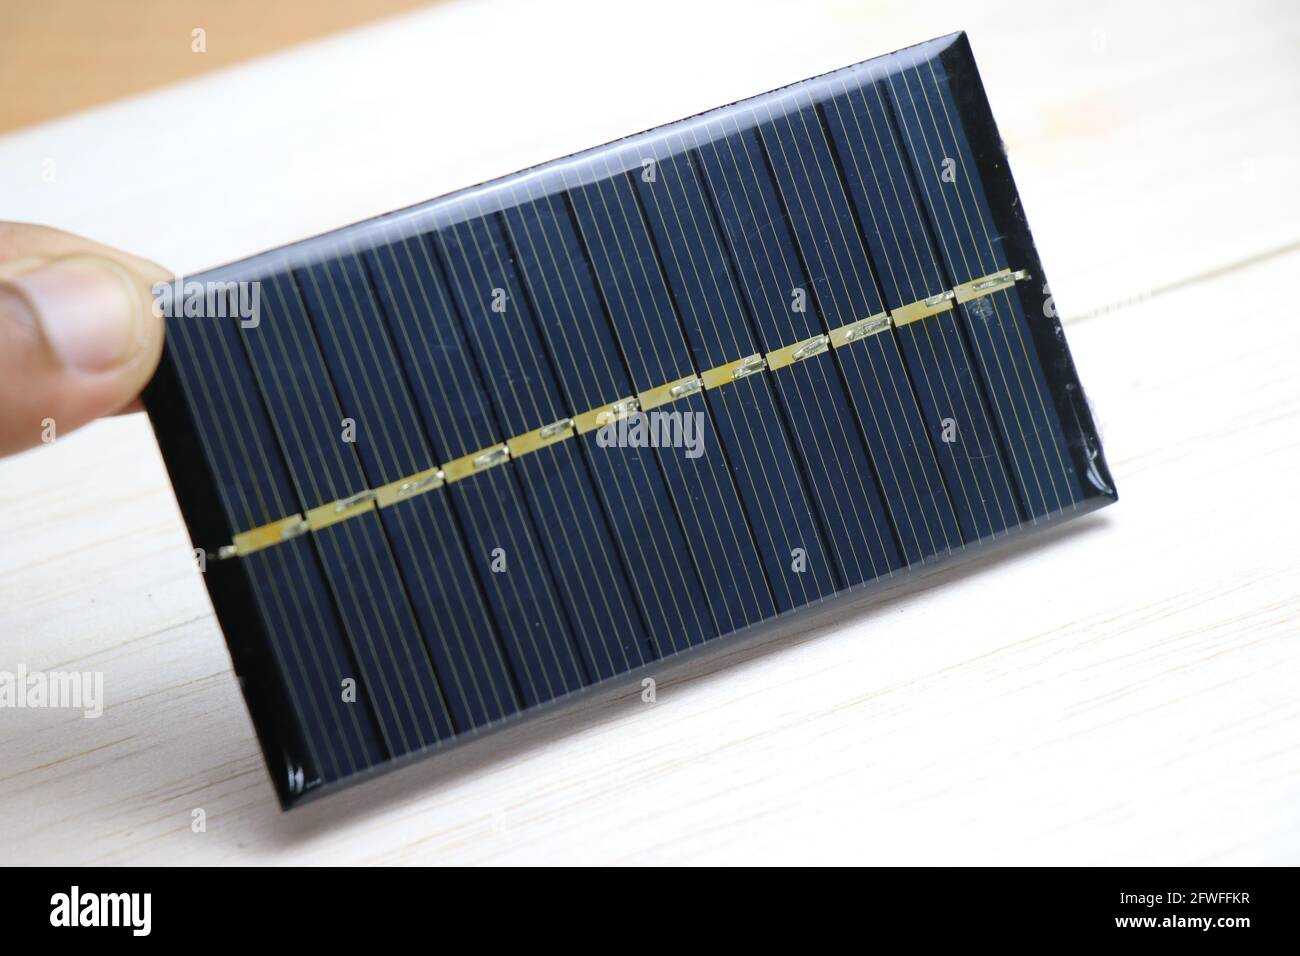 https://c8.alamy.com/compes/2fwffkr/mini-panel-solar-tambien-llamado-como-mini-celula-solar-que-es-muy-pequeno-en-tamano-sostenido-en-la-mano-que-produce-electricidad-cuando-se-expone-a-la-luz-solar-2fwffkr.jpg